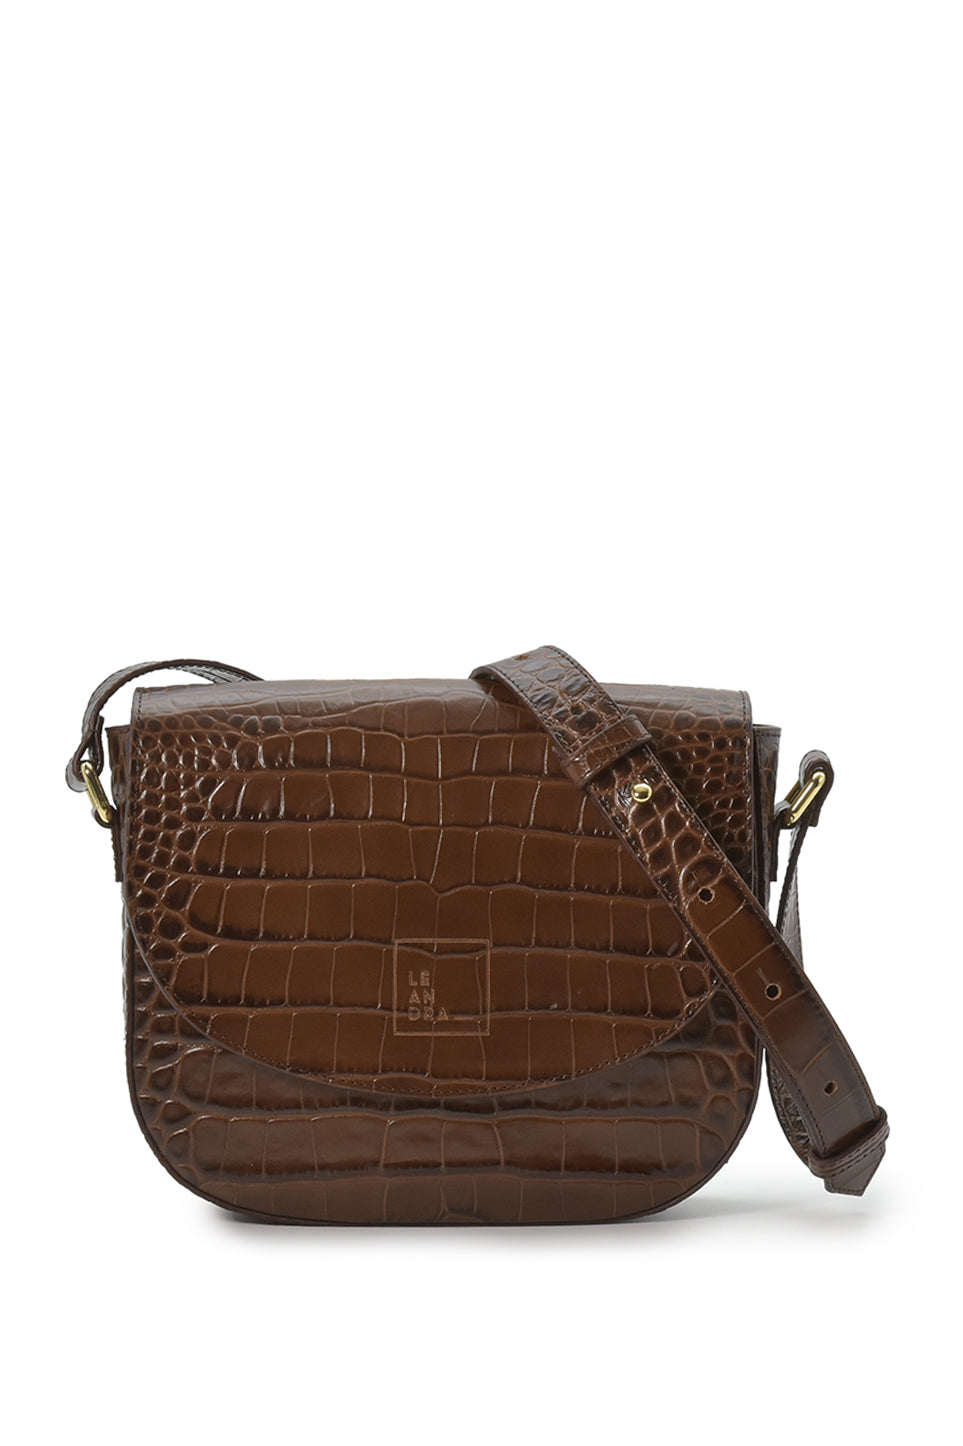 Croco Engraved Leather Shoulder Bag Brown